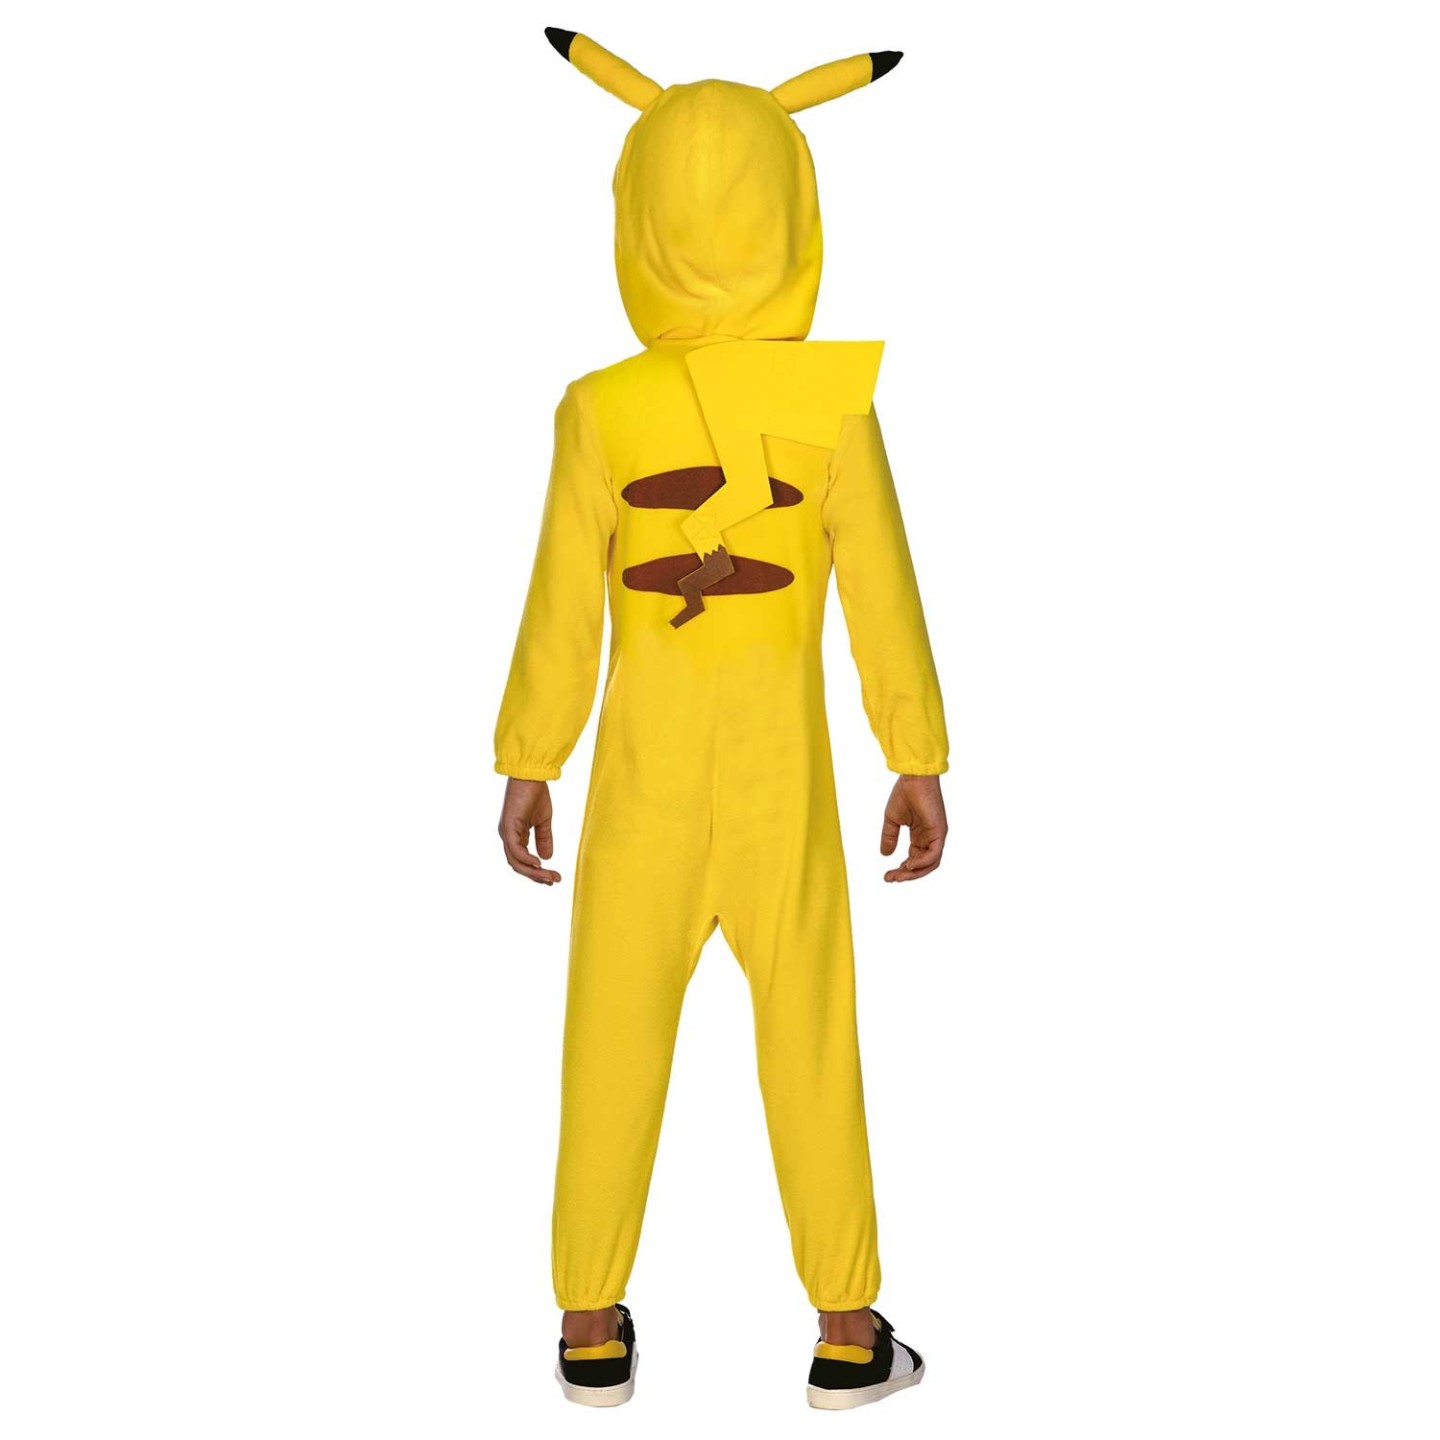 niet Laat je zien Attent Pokemon kostuum kind - Pikachu jurkje | Jokershop Feestwinkel